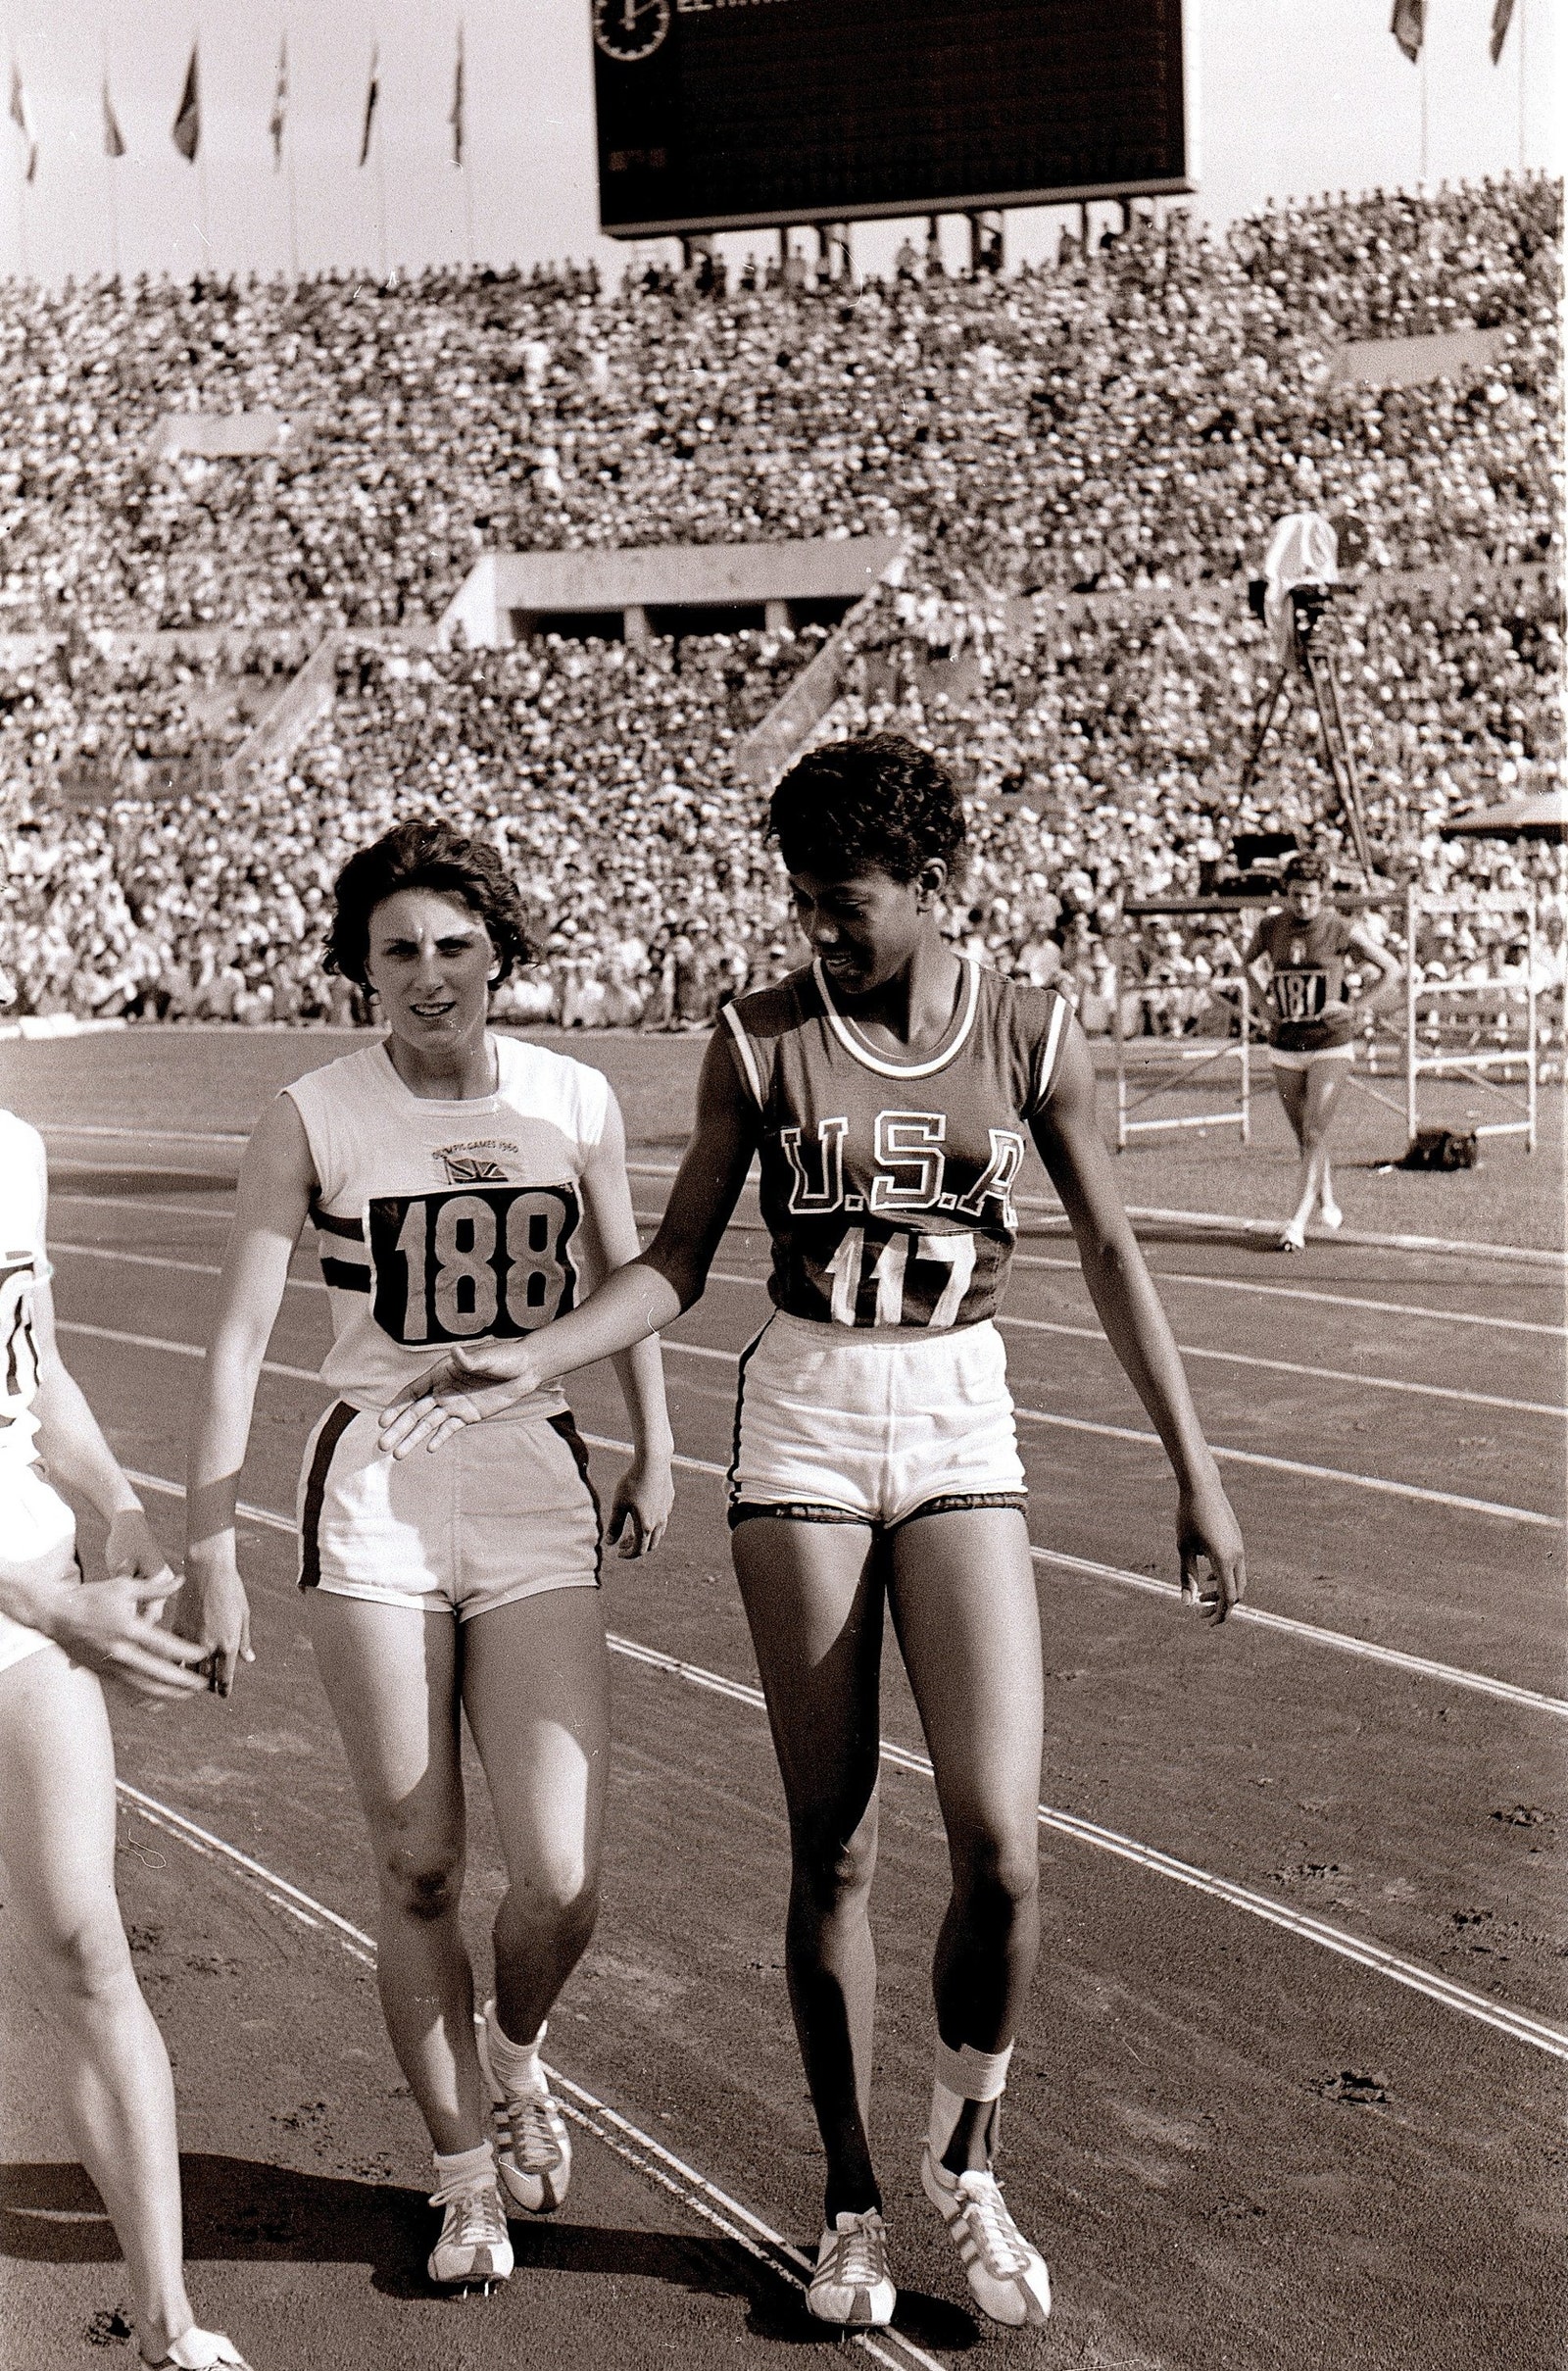 إيطاليا، 25 أغسطس، مضمار السباق، الألعاب الأولمبية الصيفية لعام 1960، الولايات المتحدة الأمريكية، ويلما رودولف، منتصرة، وهي تصافح المنافسين بعد...